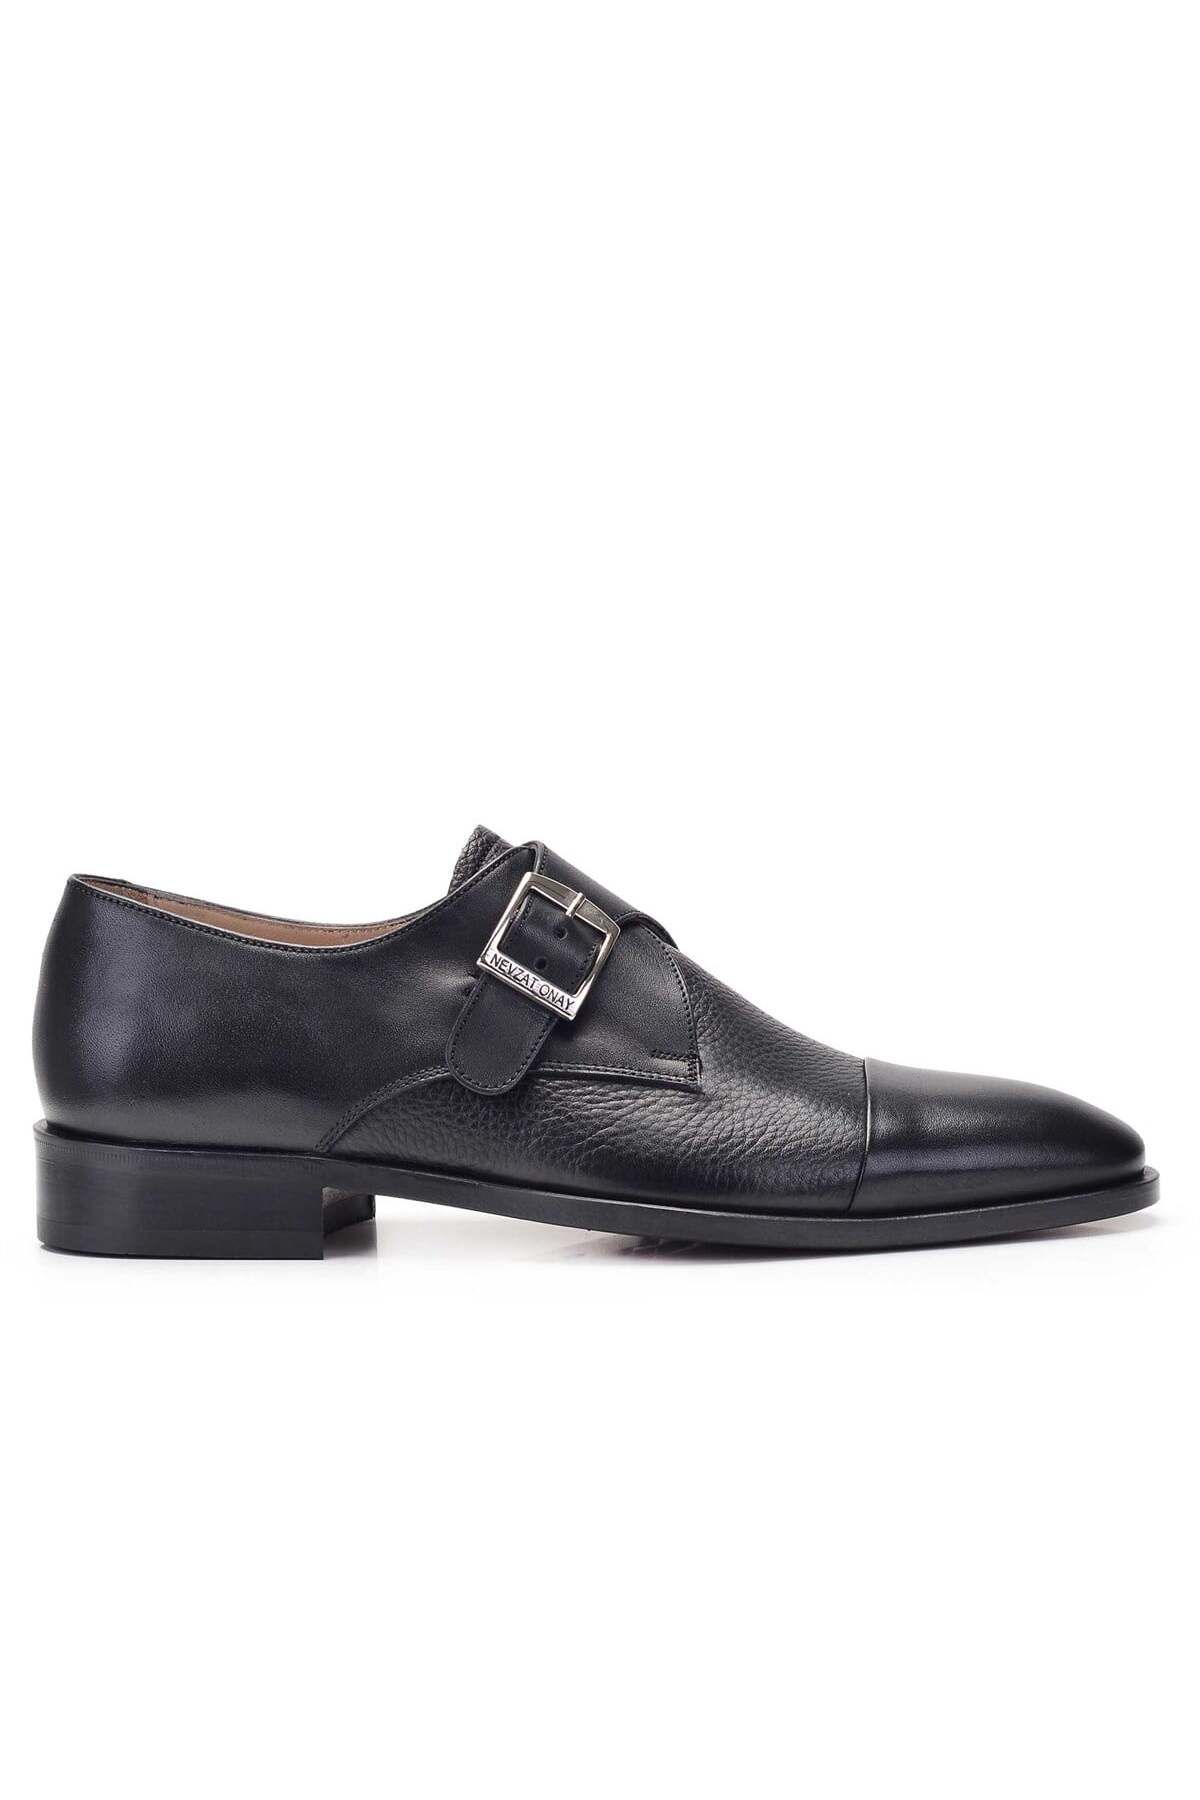 Nevzat Onay Siyah Tokalı Klasik Erkek Ayakkabı -11801-